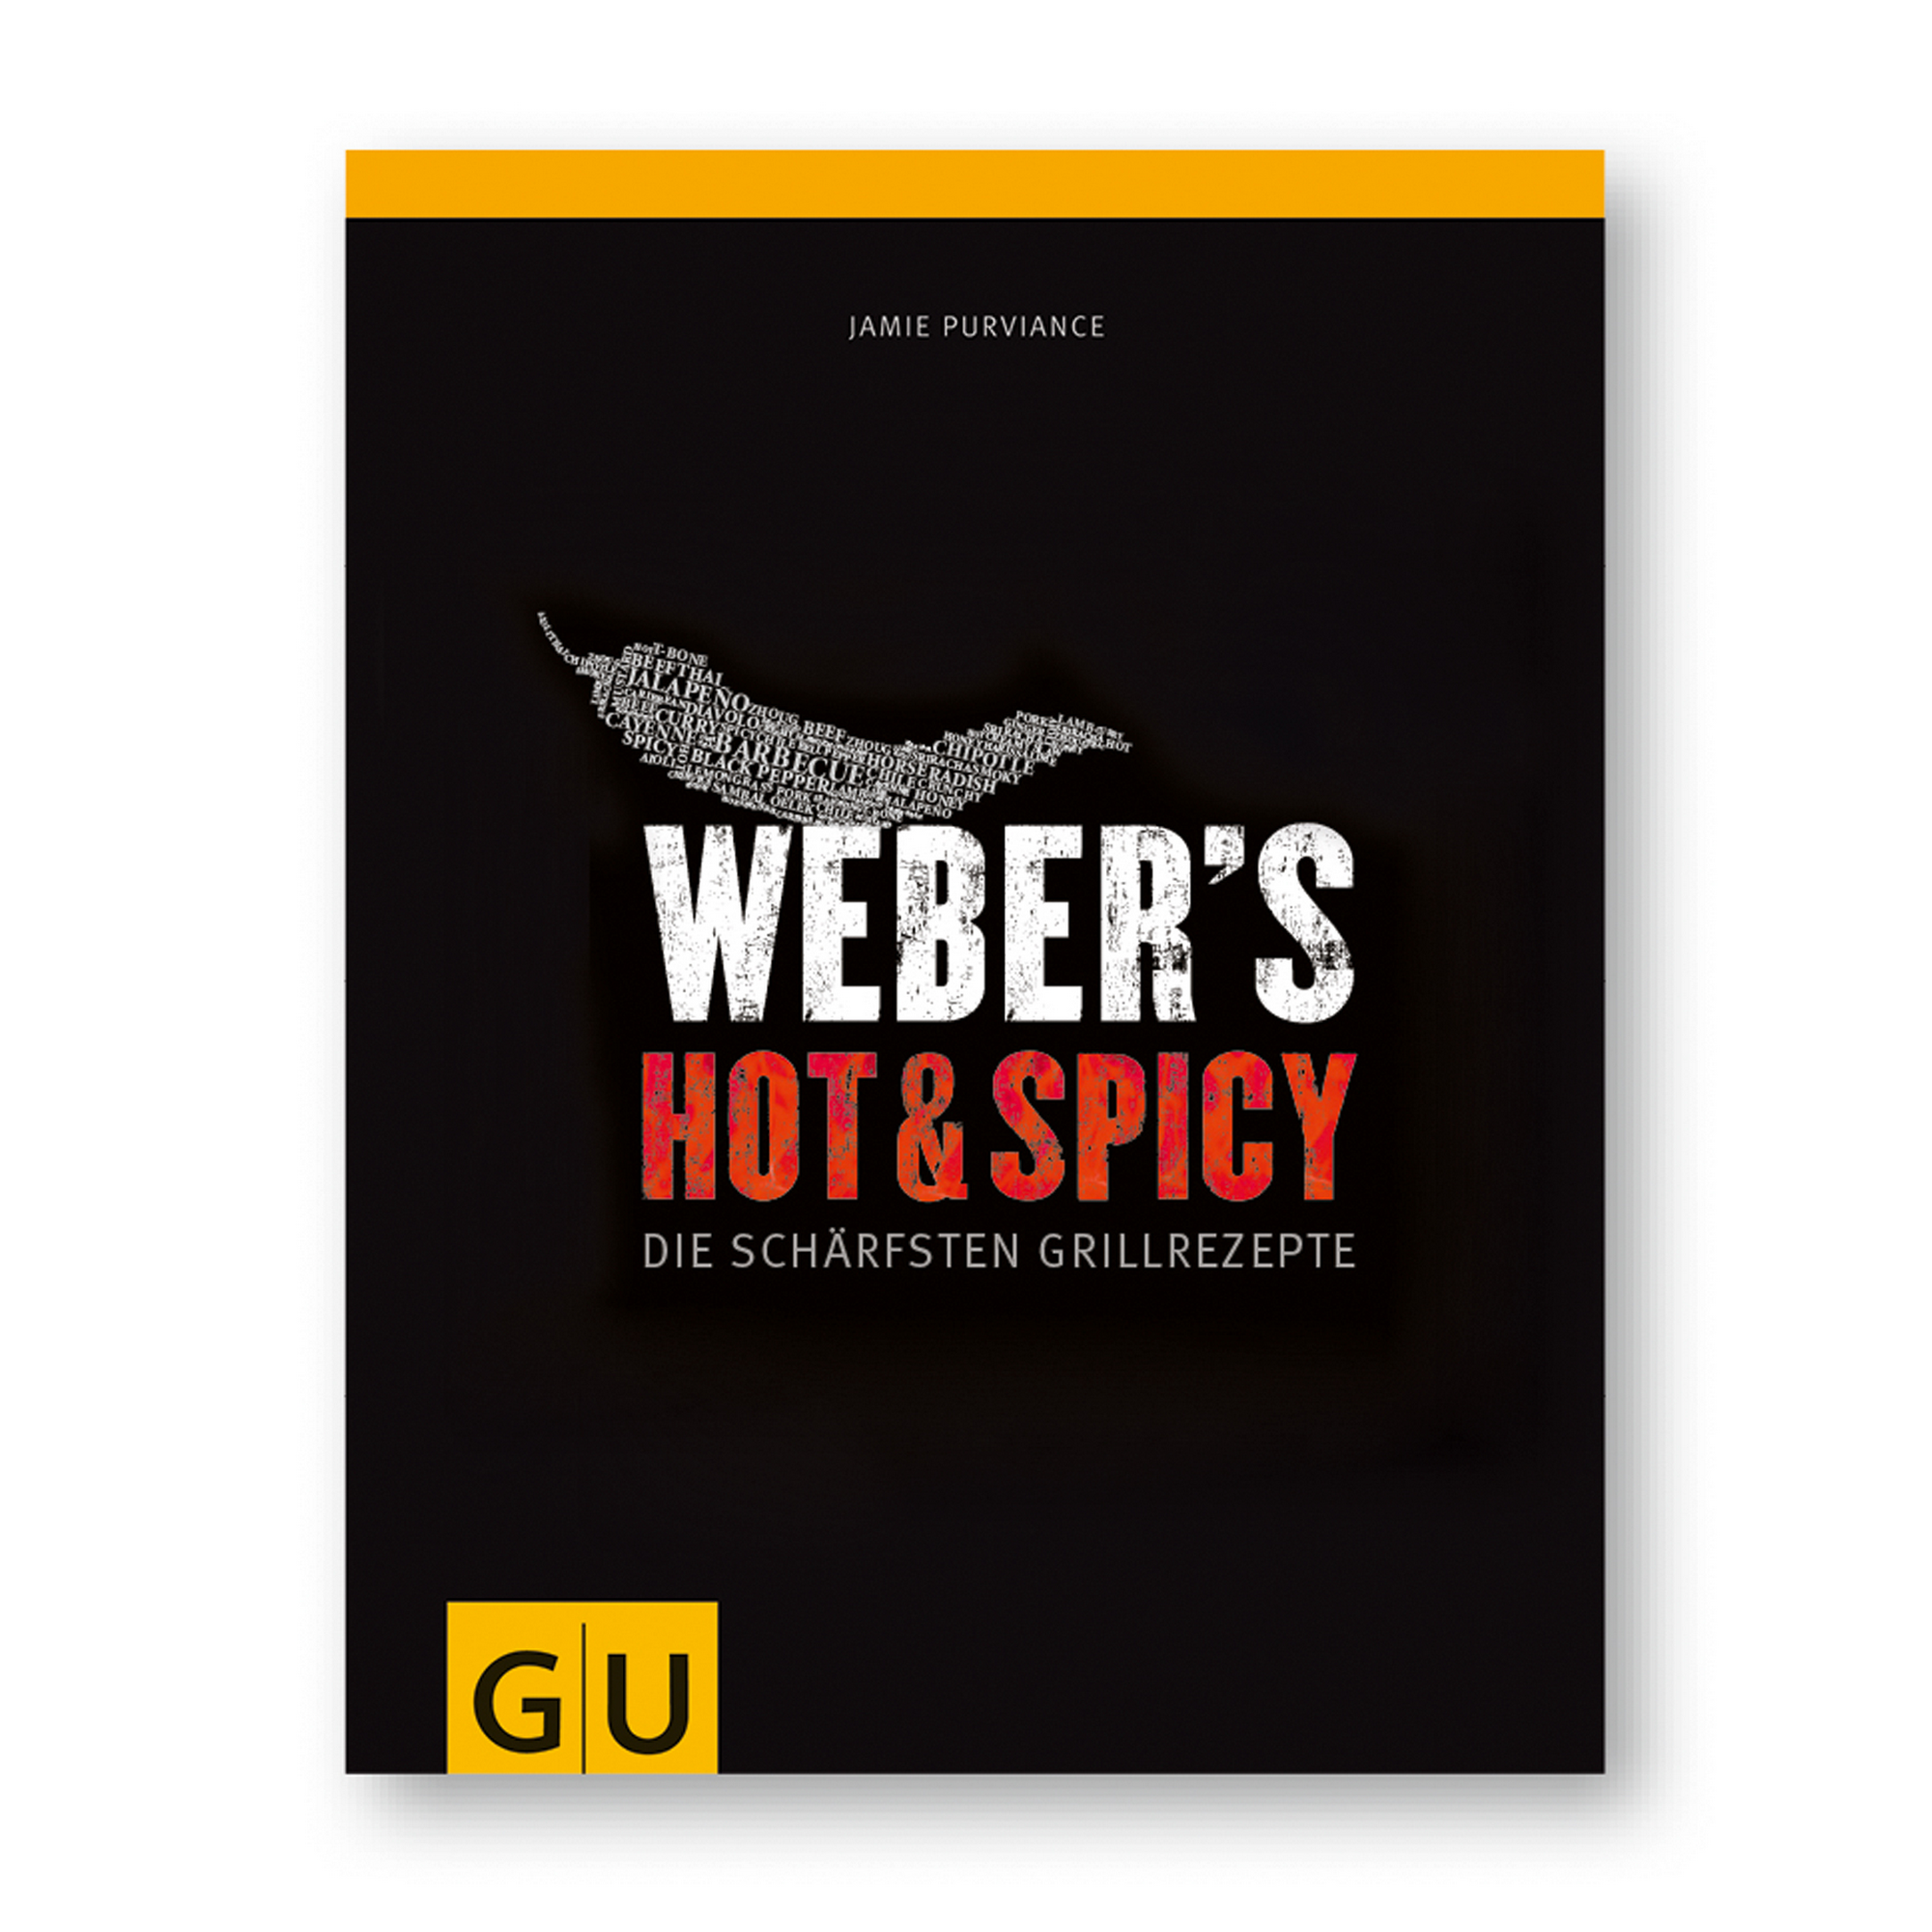 Grillbuch Jamie Purviance 'Weber's Hot & Spicy: Die schärfsten Grillrezepte' + product picture